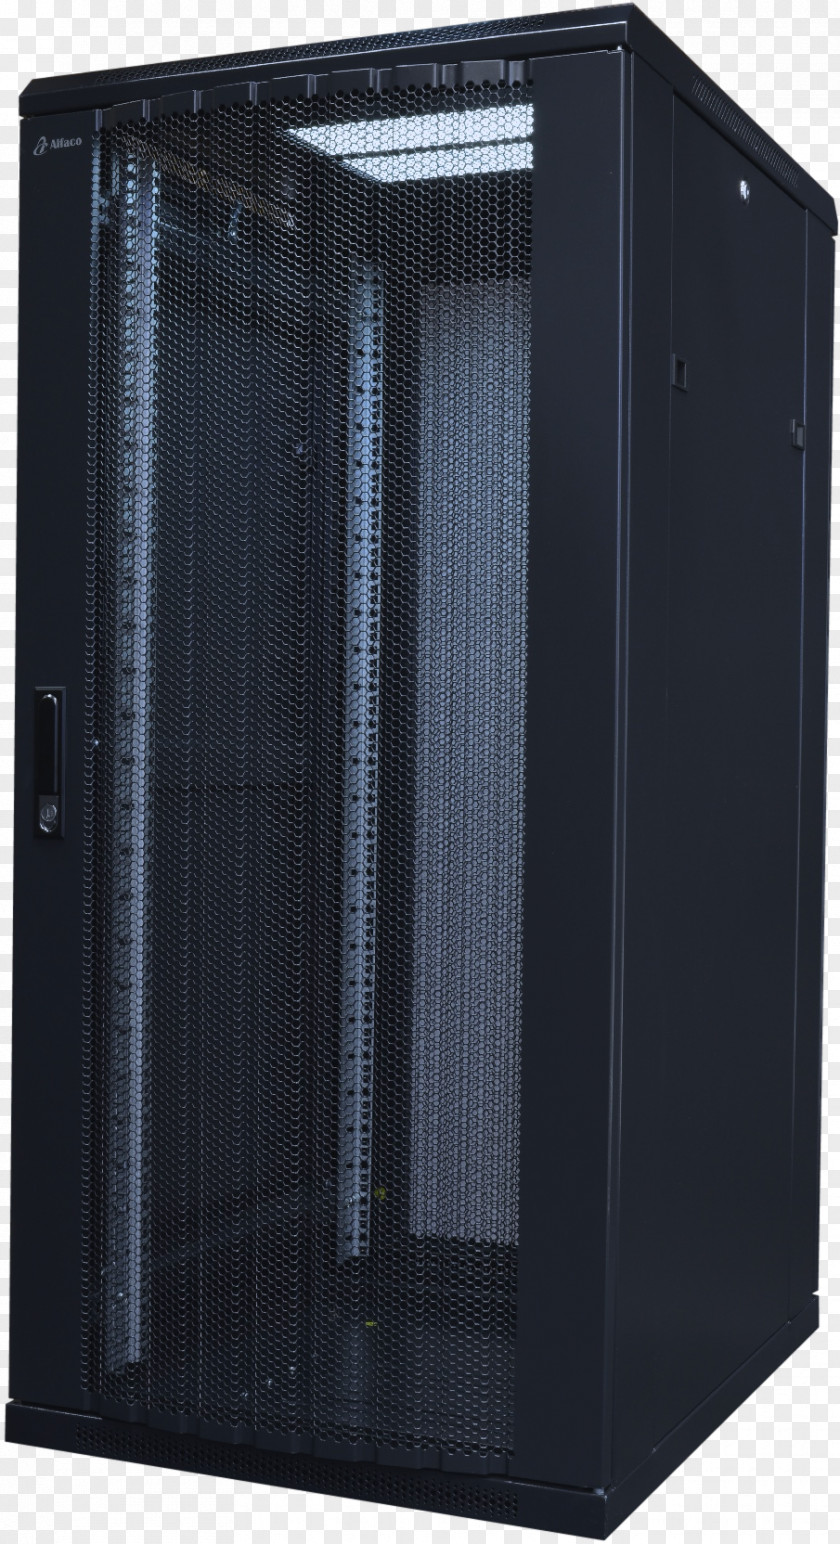 19-inch Rack Computer Cases & Housings Servers Sound Box SERVERKAST Steel PNG